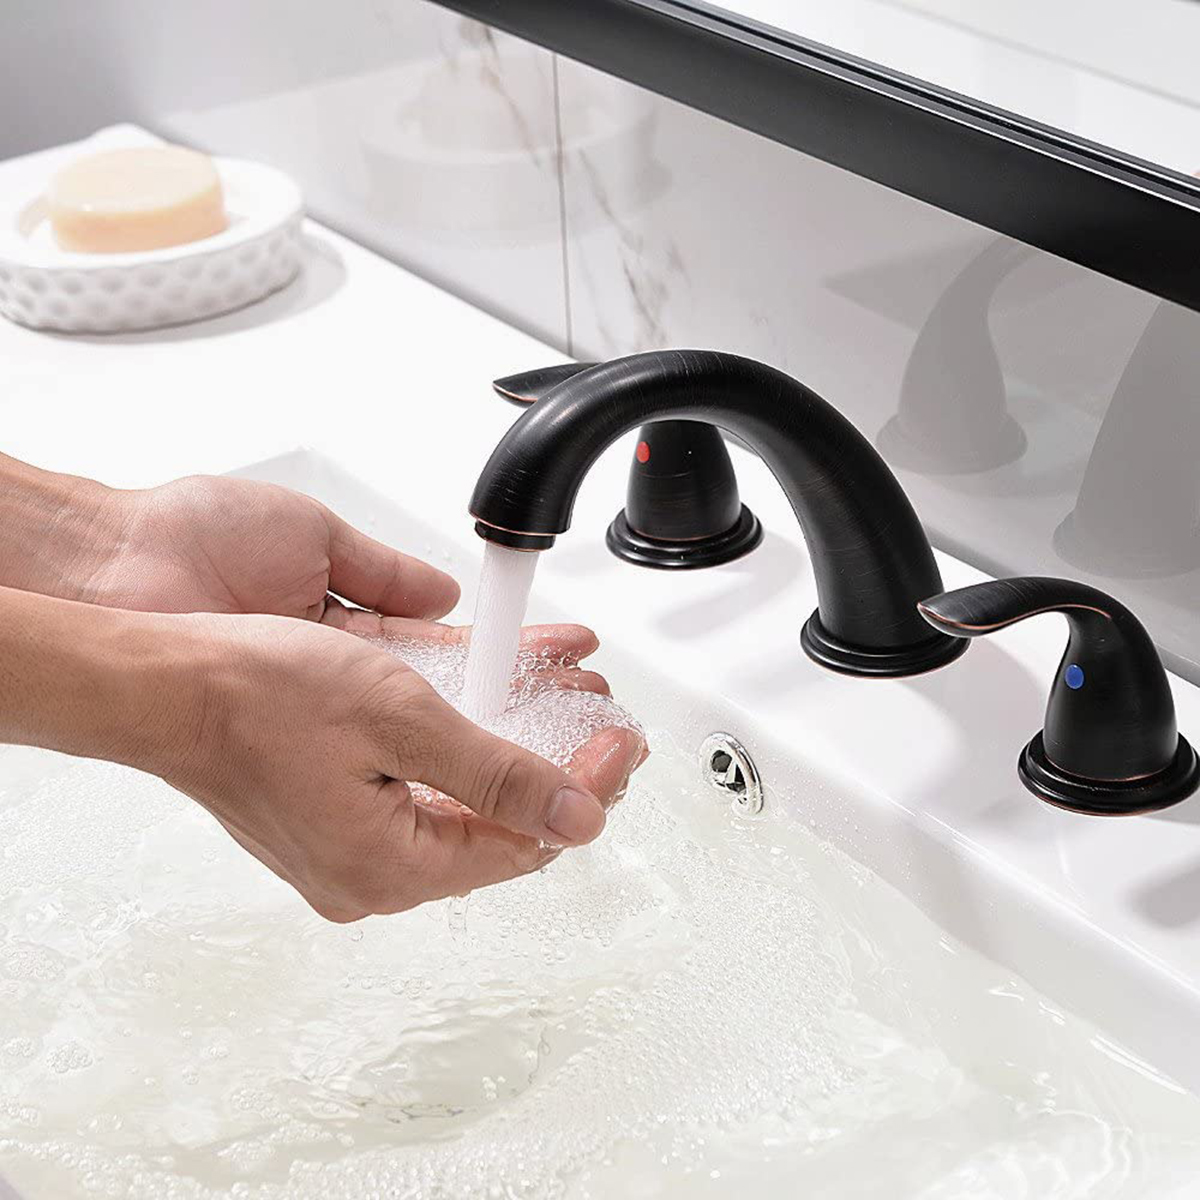 Широко распространенные смесители для ванной комнаты с 3 отверстиями, сертифицированные CUPC в благородном промышленном стиле, втирают масло в черный цвет